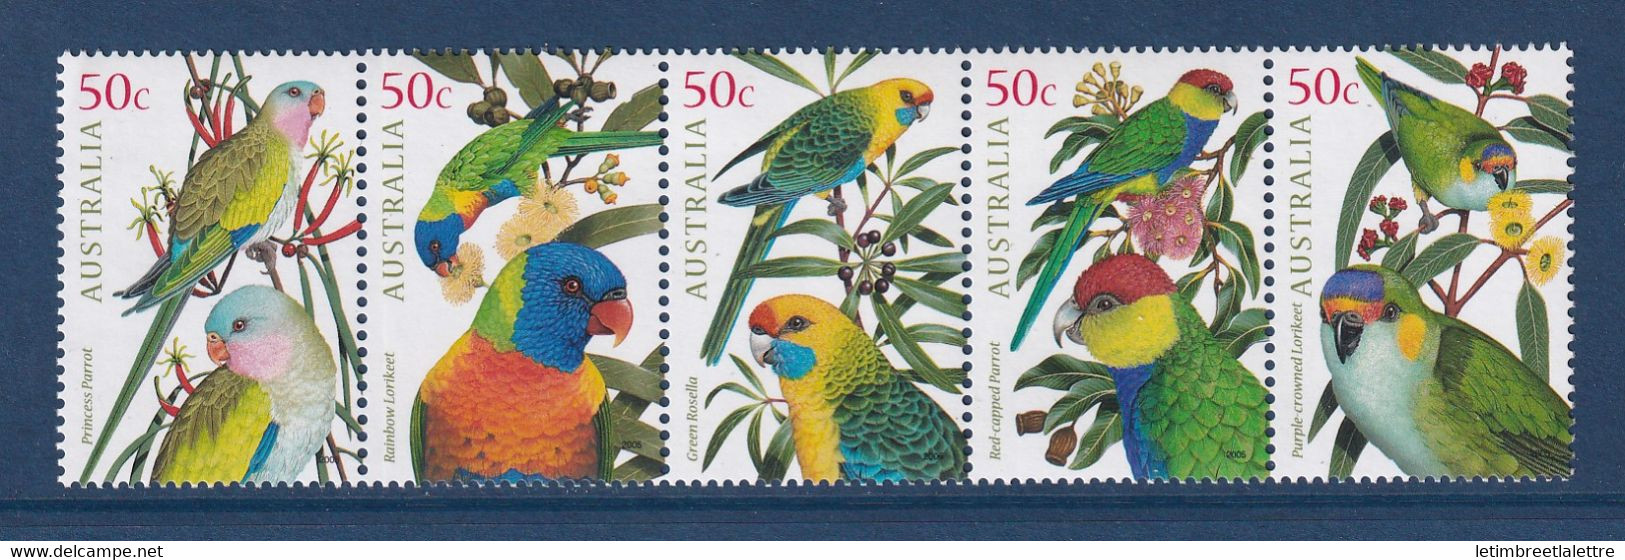 Australie - YT N° 2297 à 2301 ** - Neuf Sans Charnière - 2005 - Mint Stamps